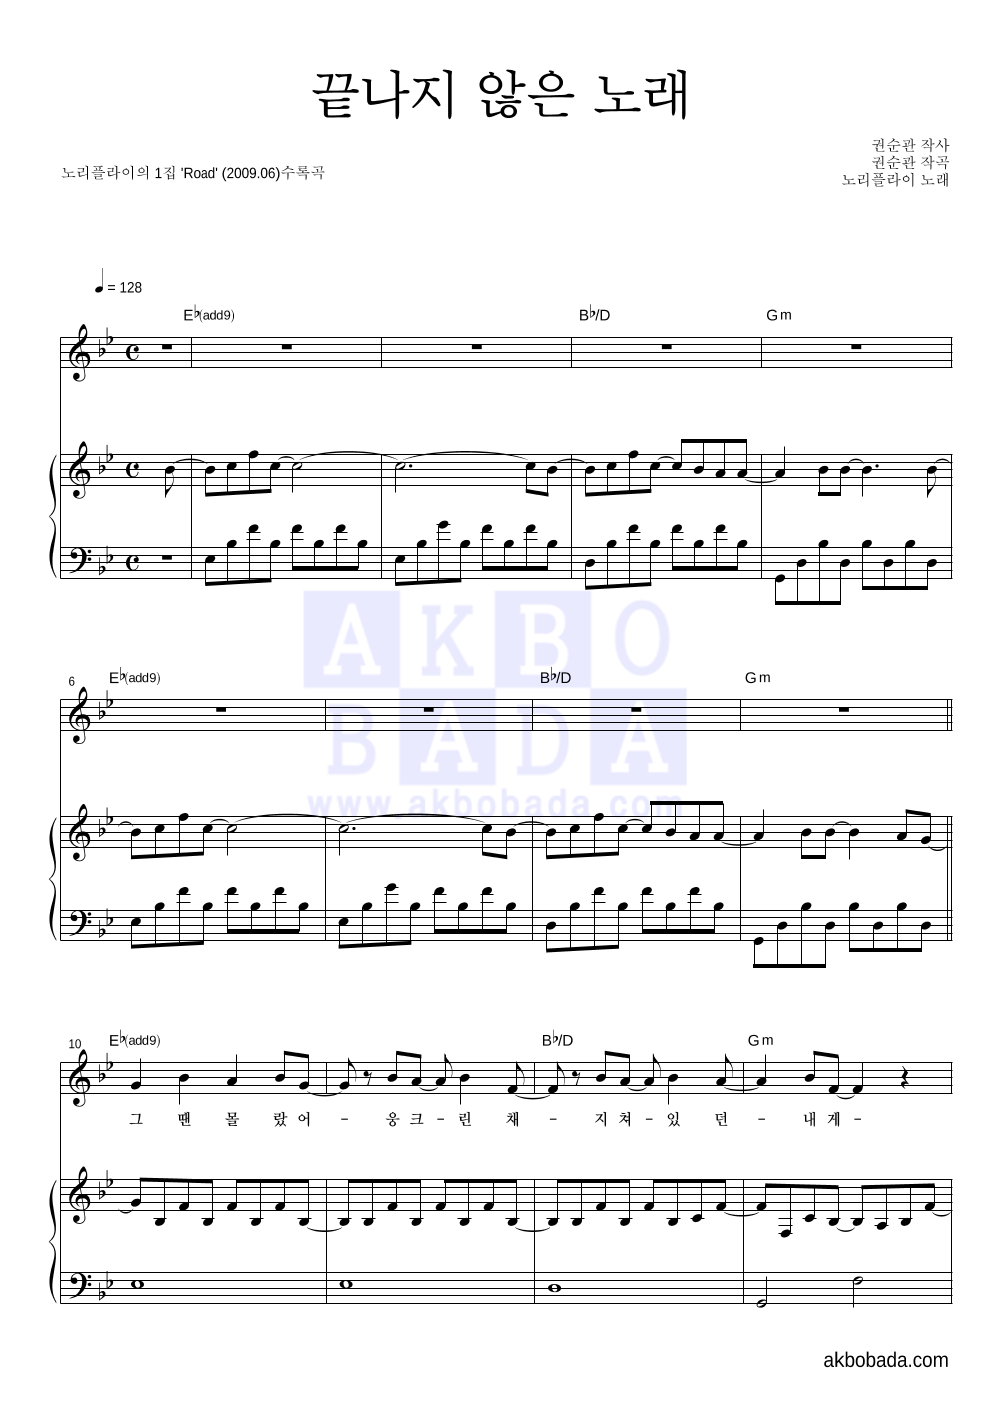 노리플라이 - 끝나지 않은 노래 피아노 3단 악보 